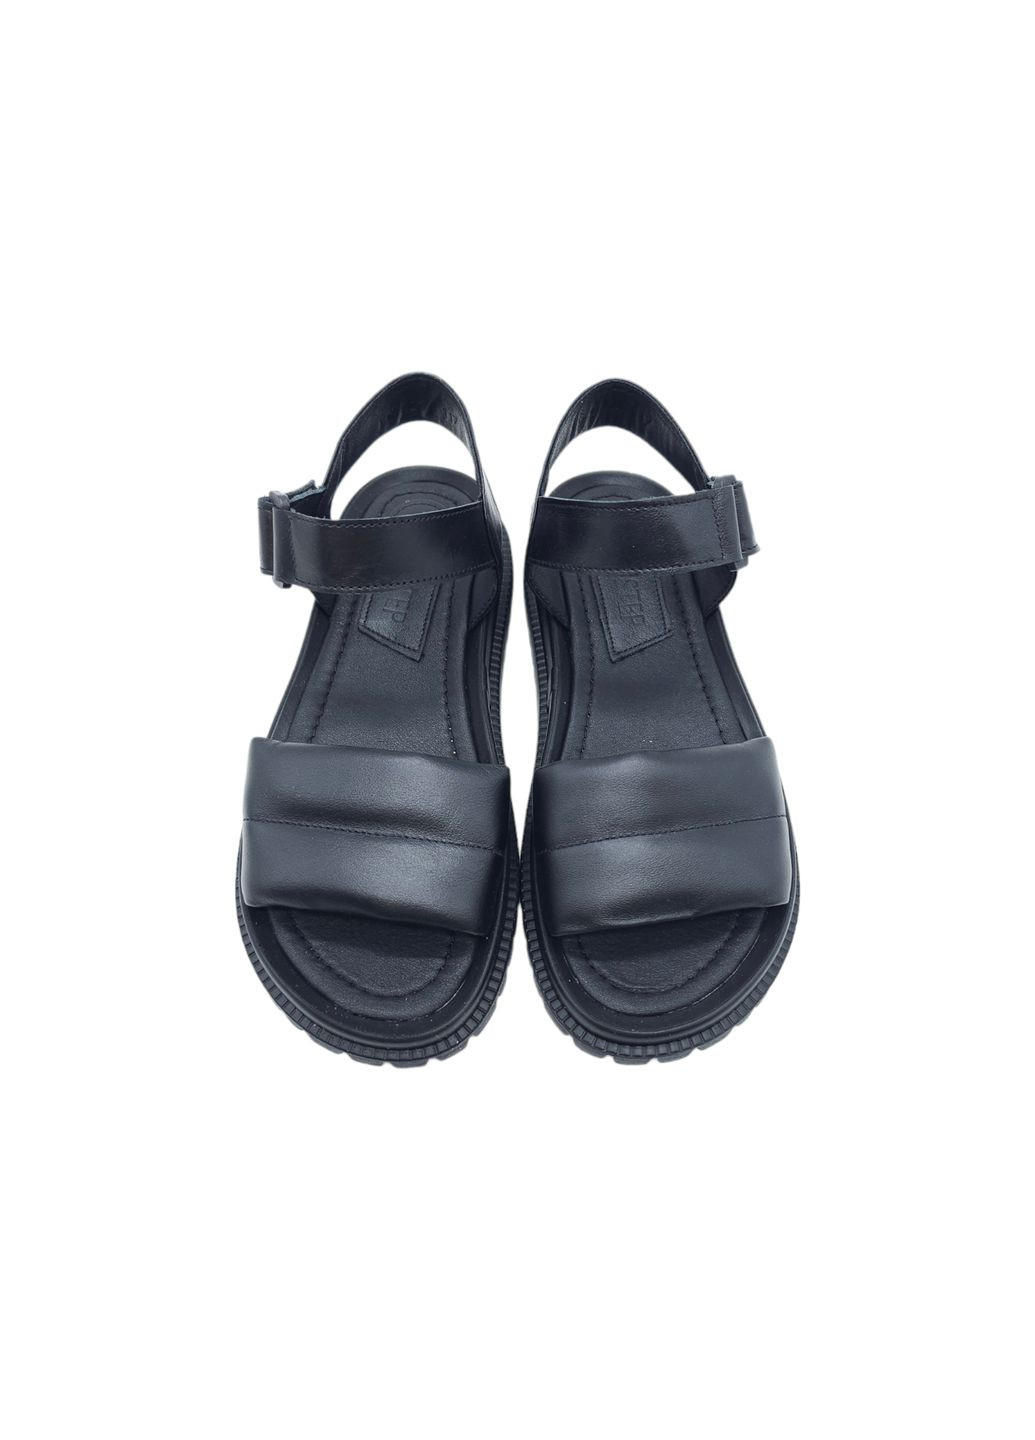 Черные женские босоножки черные кожаные fs-18-24 23 см(р) Foot Step